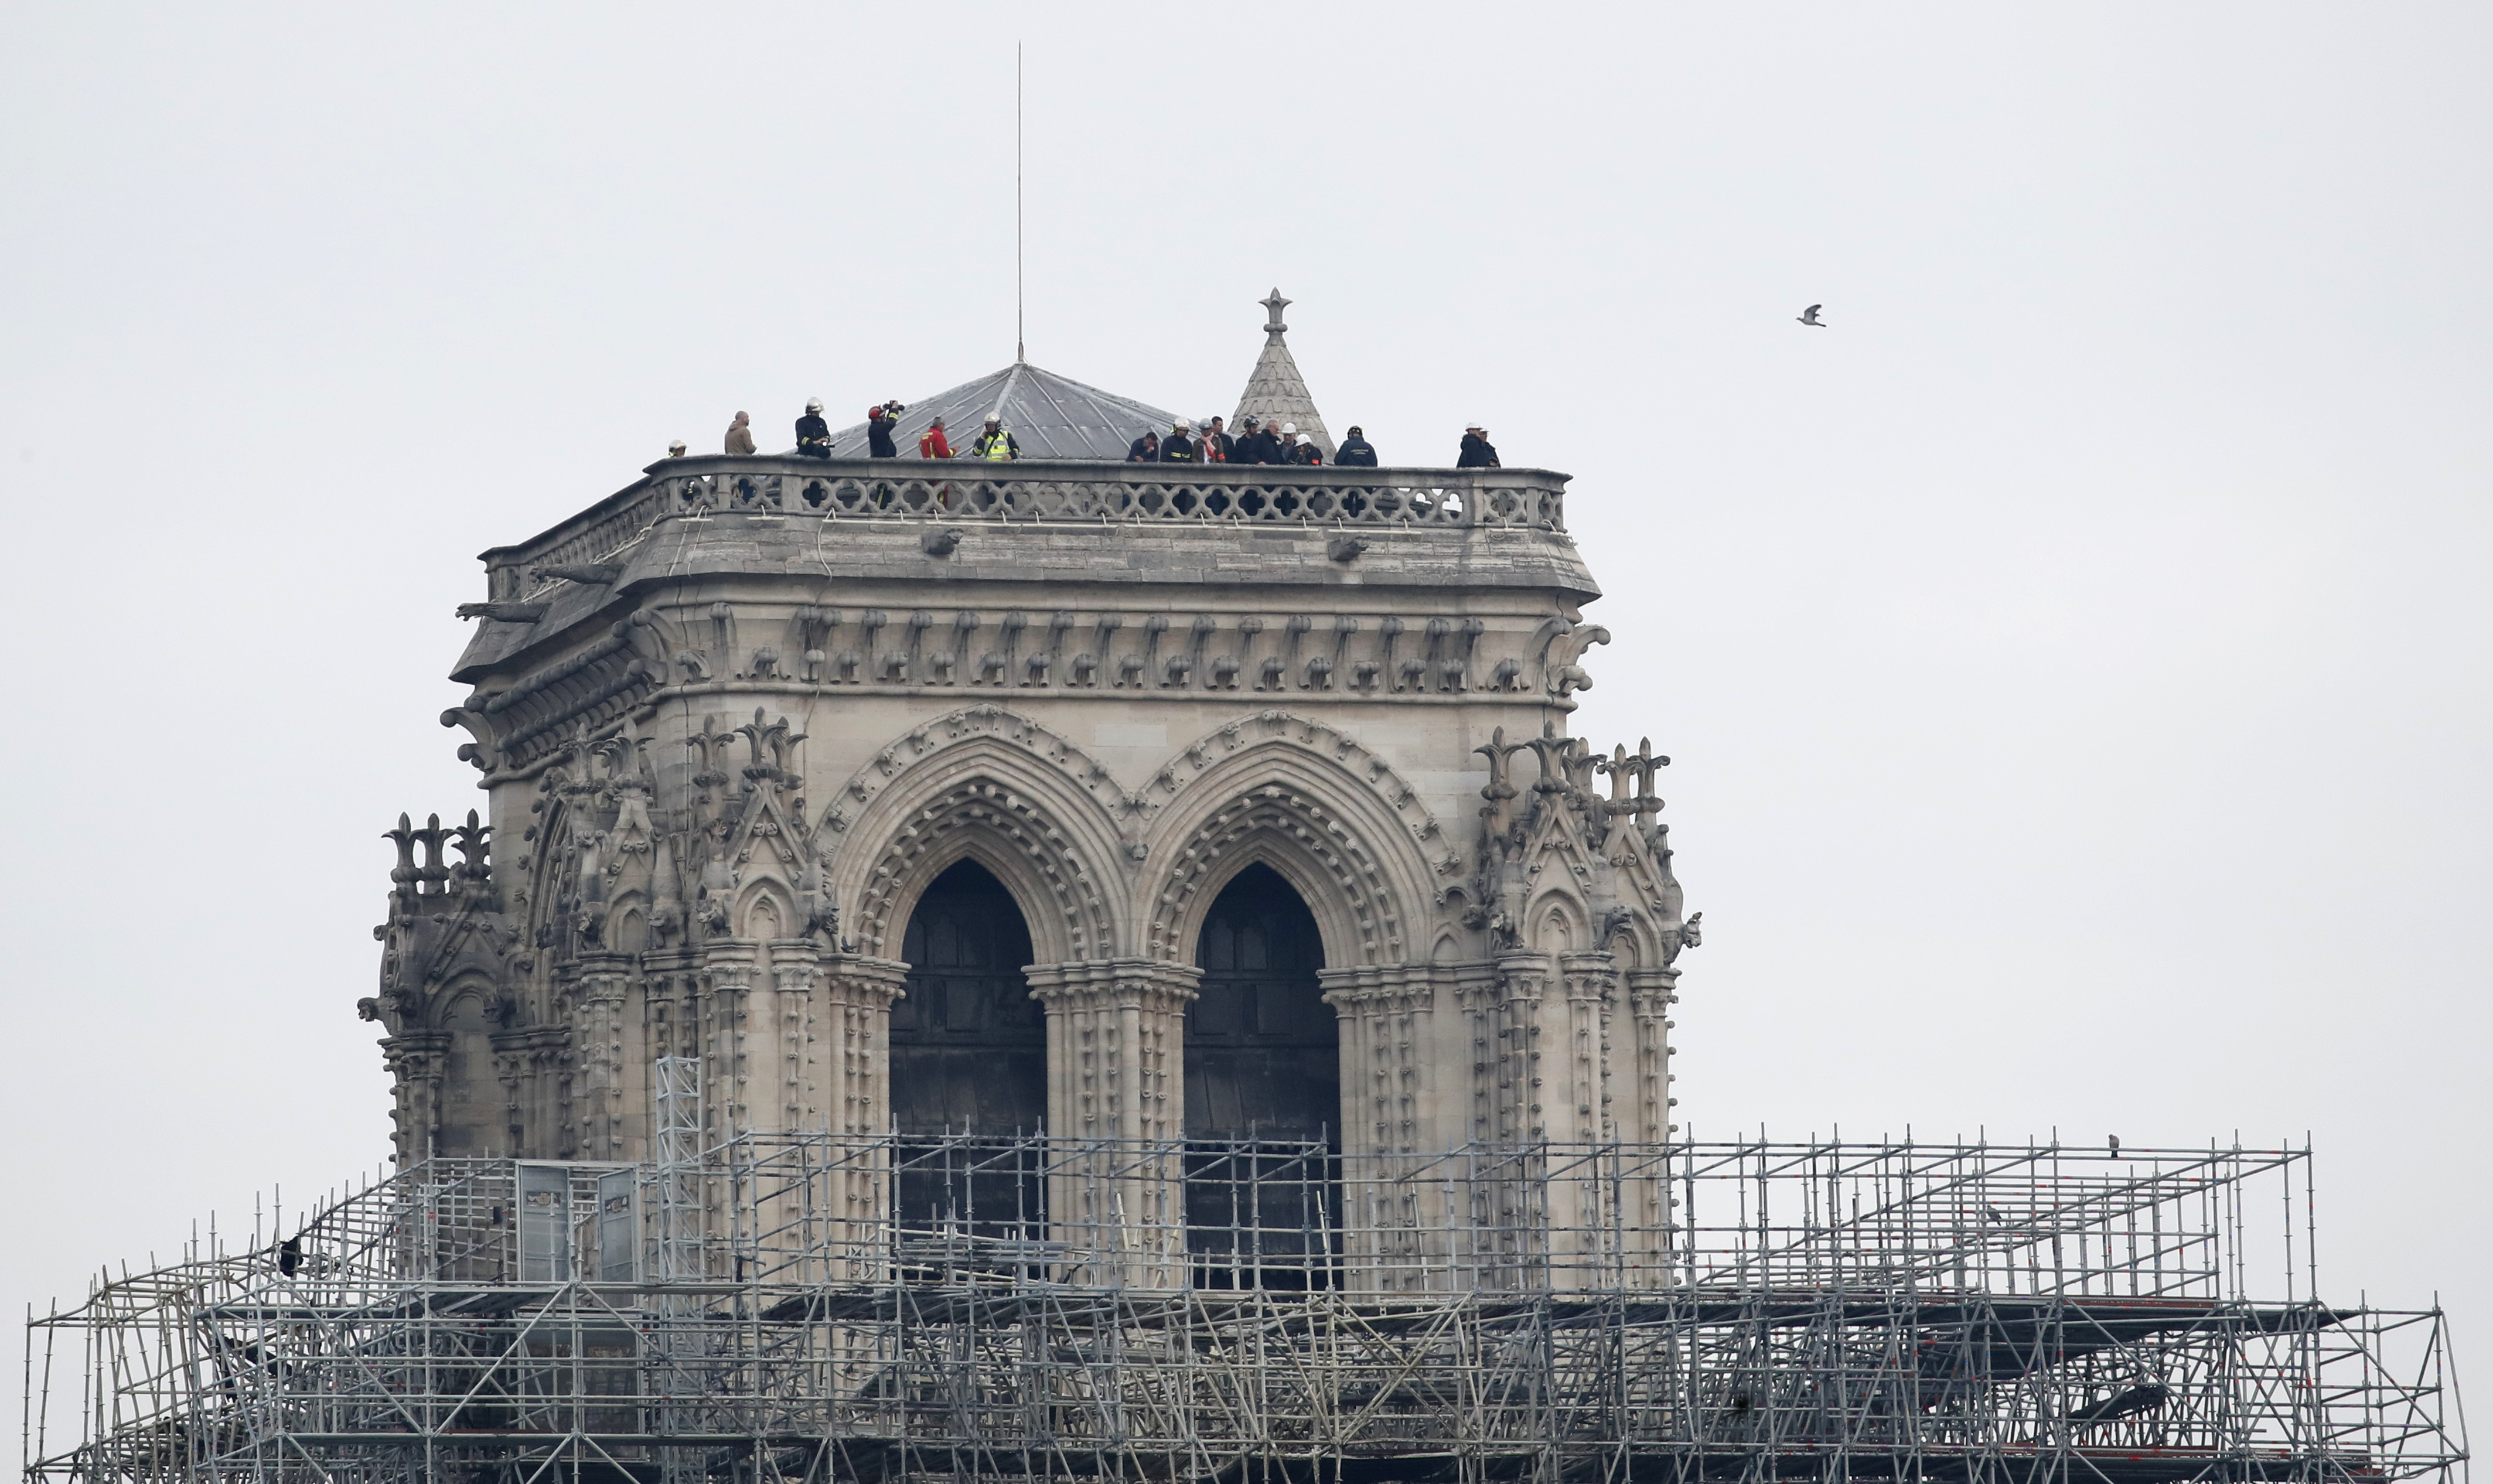 Franța organizează un concurs internațional pentru a reconstrui Notre Dame